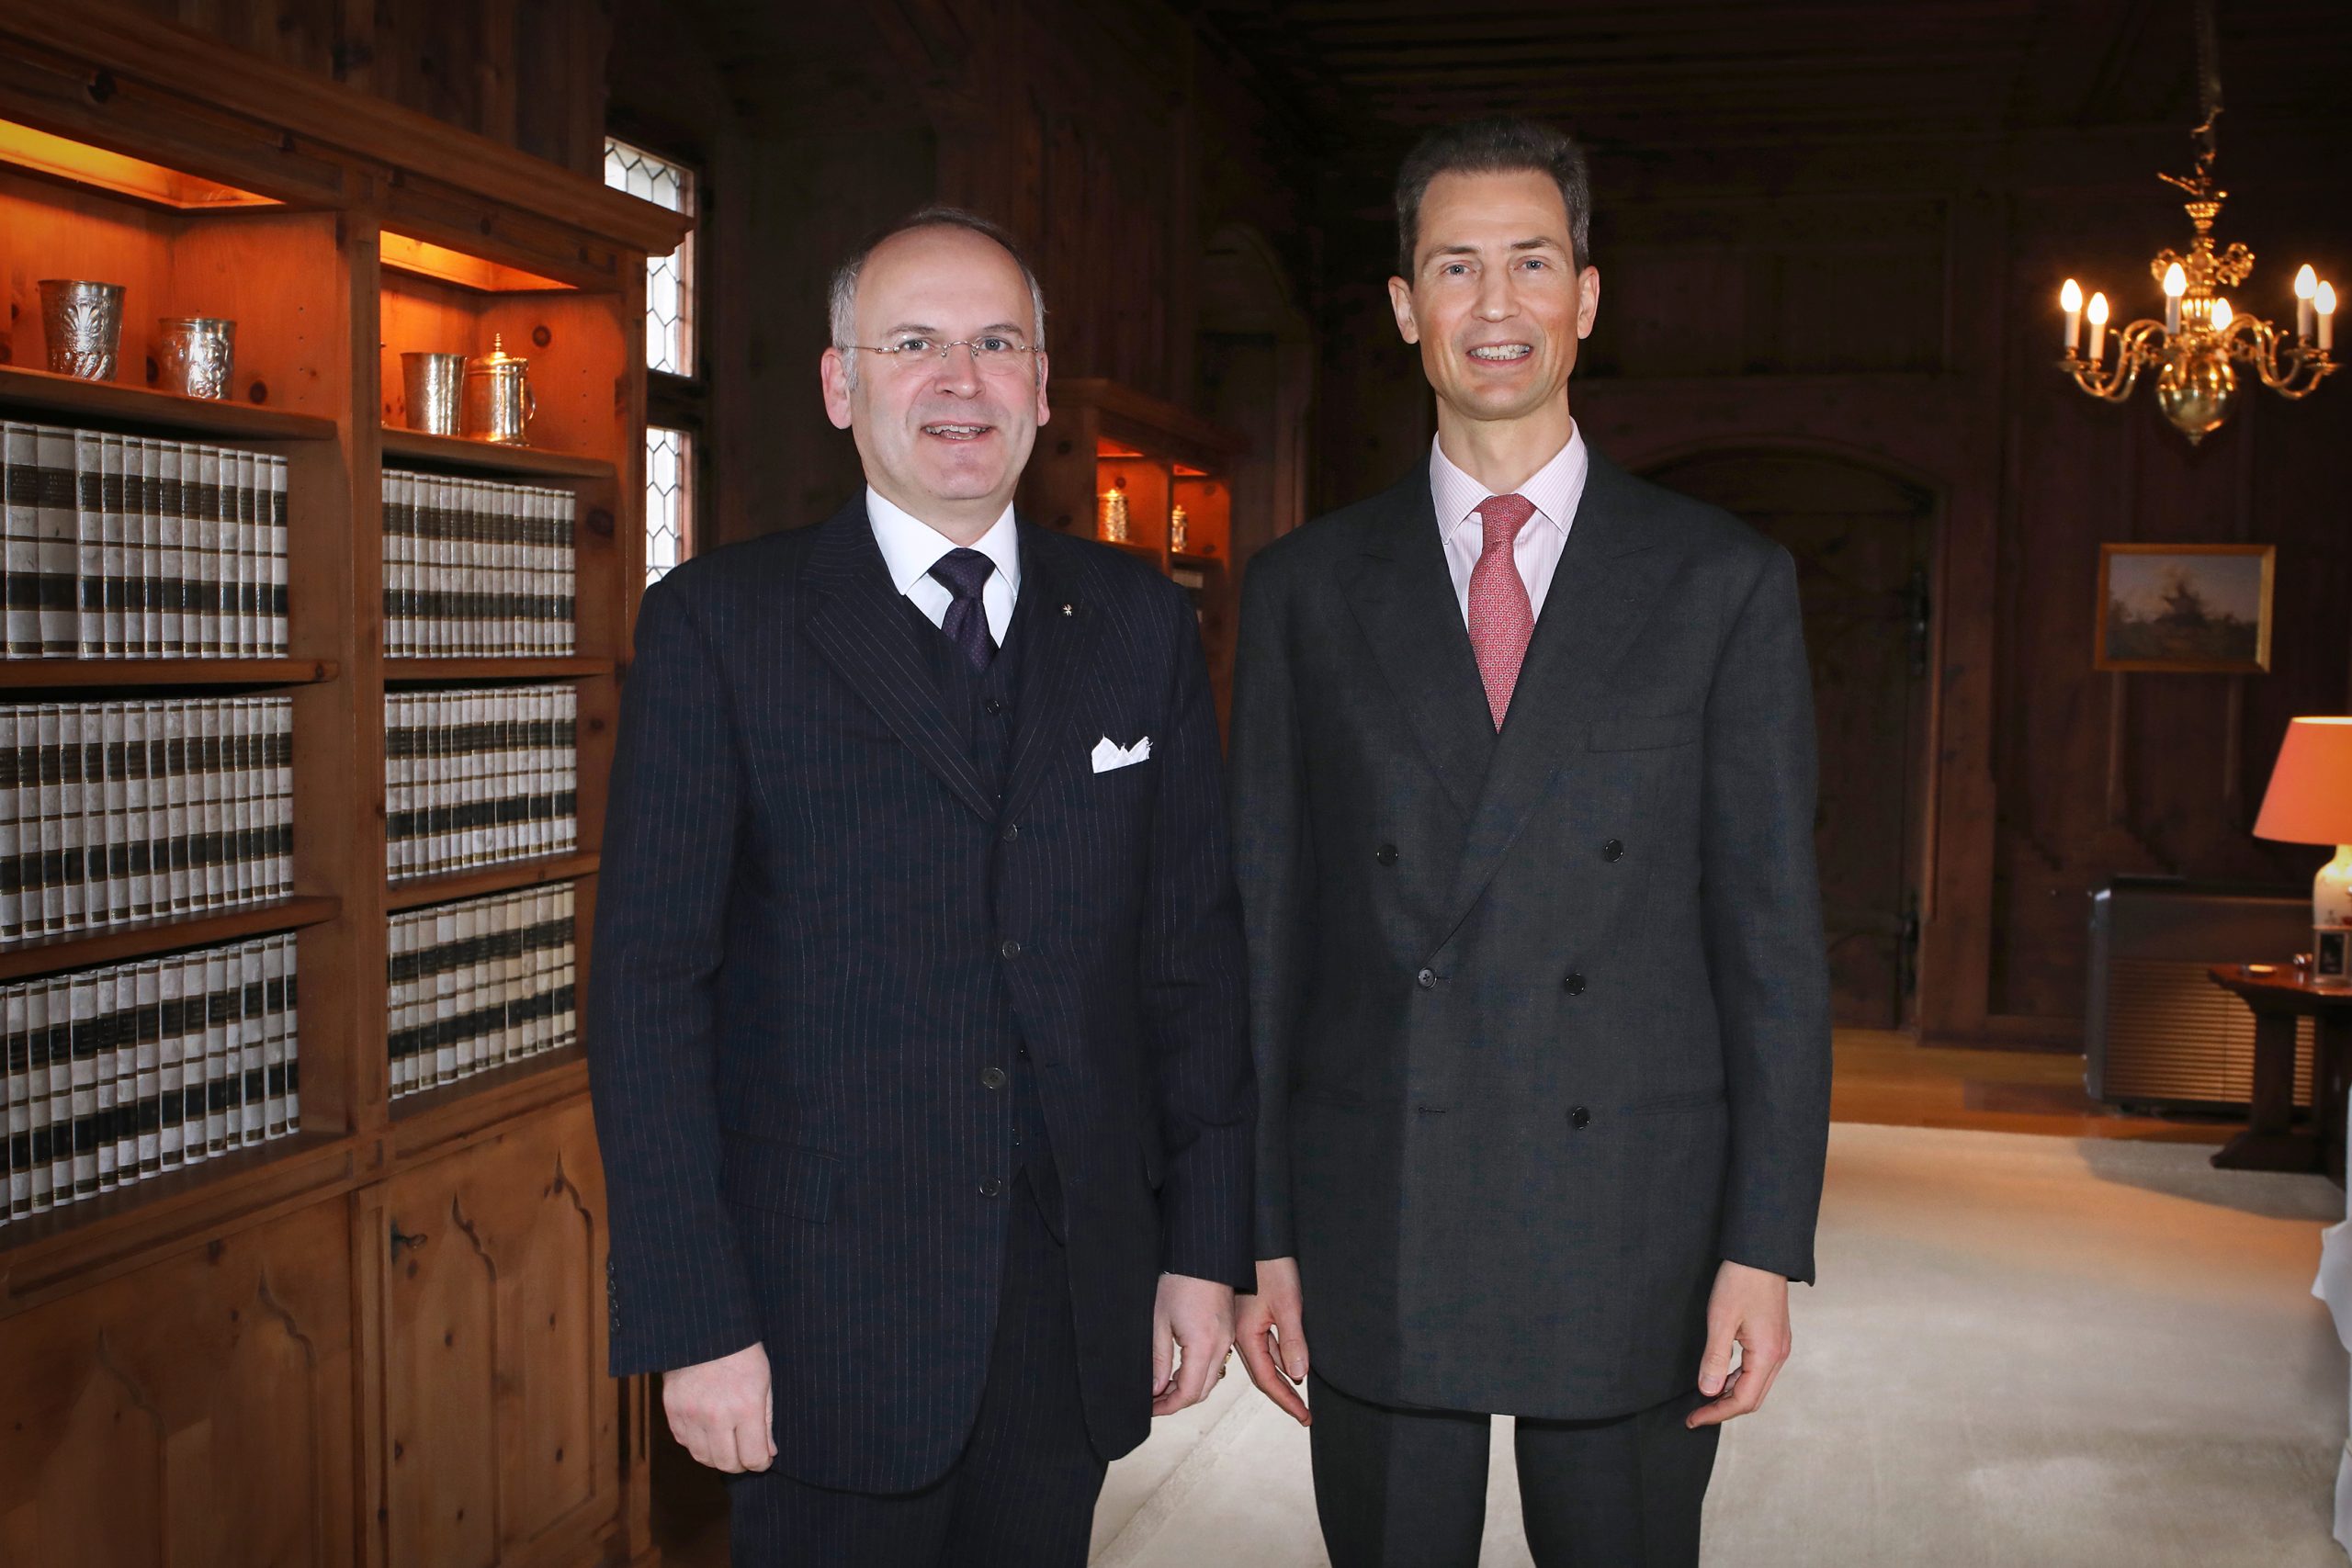 Il nuovo ambasciatore dell’Ordine di Malta Klaus Schweinsberg ha presentato le sue credenziali al principe ereditario Alois von und zu Liechtenstein